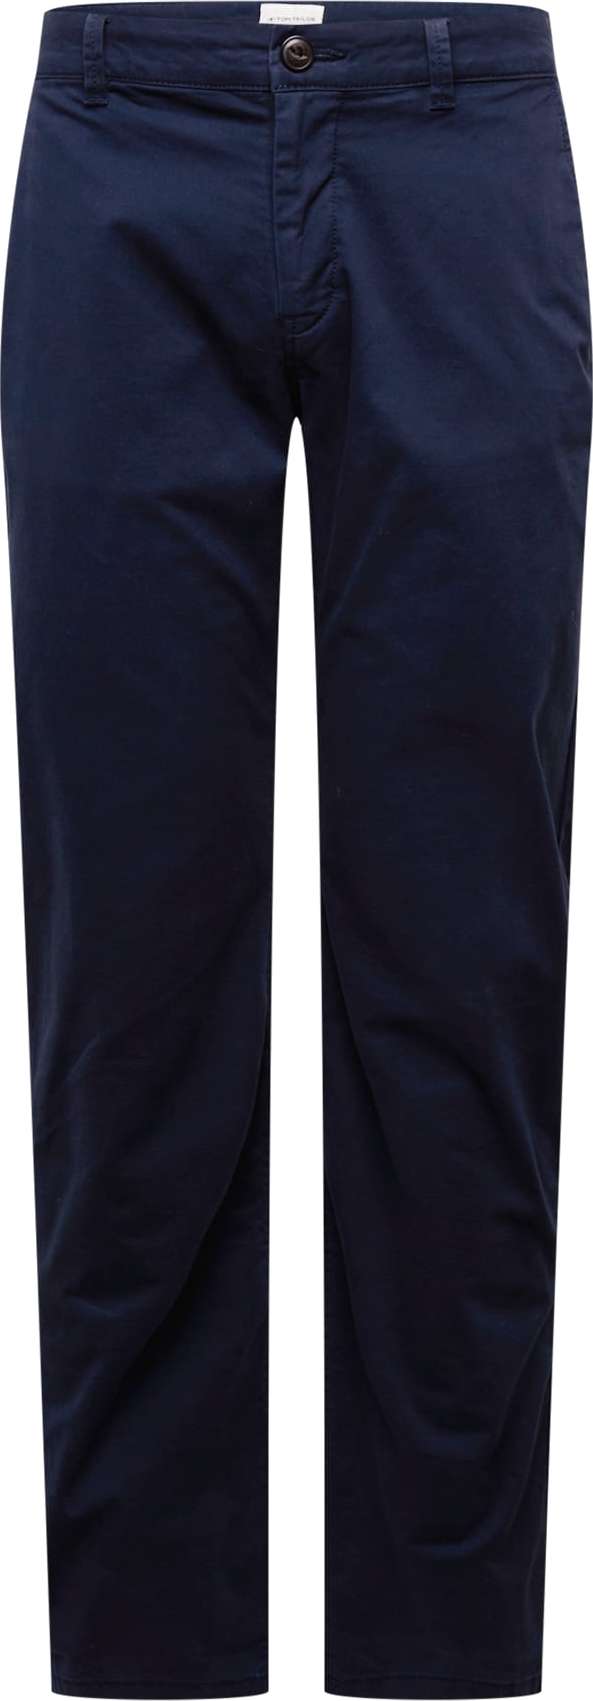 TOM TAILOR Chino kalhoty námořnická modř